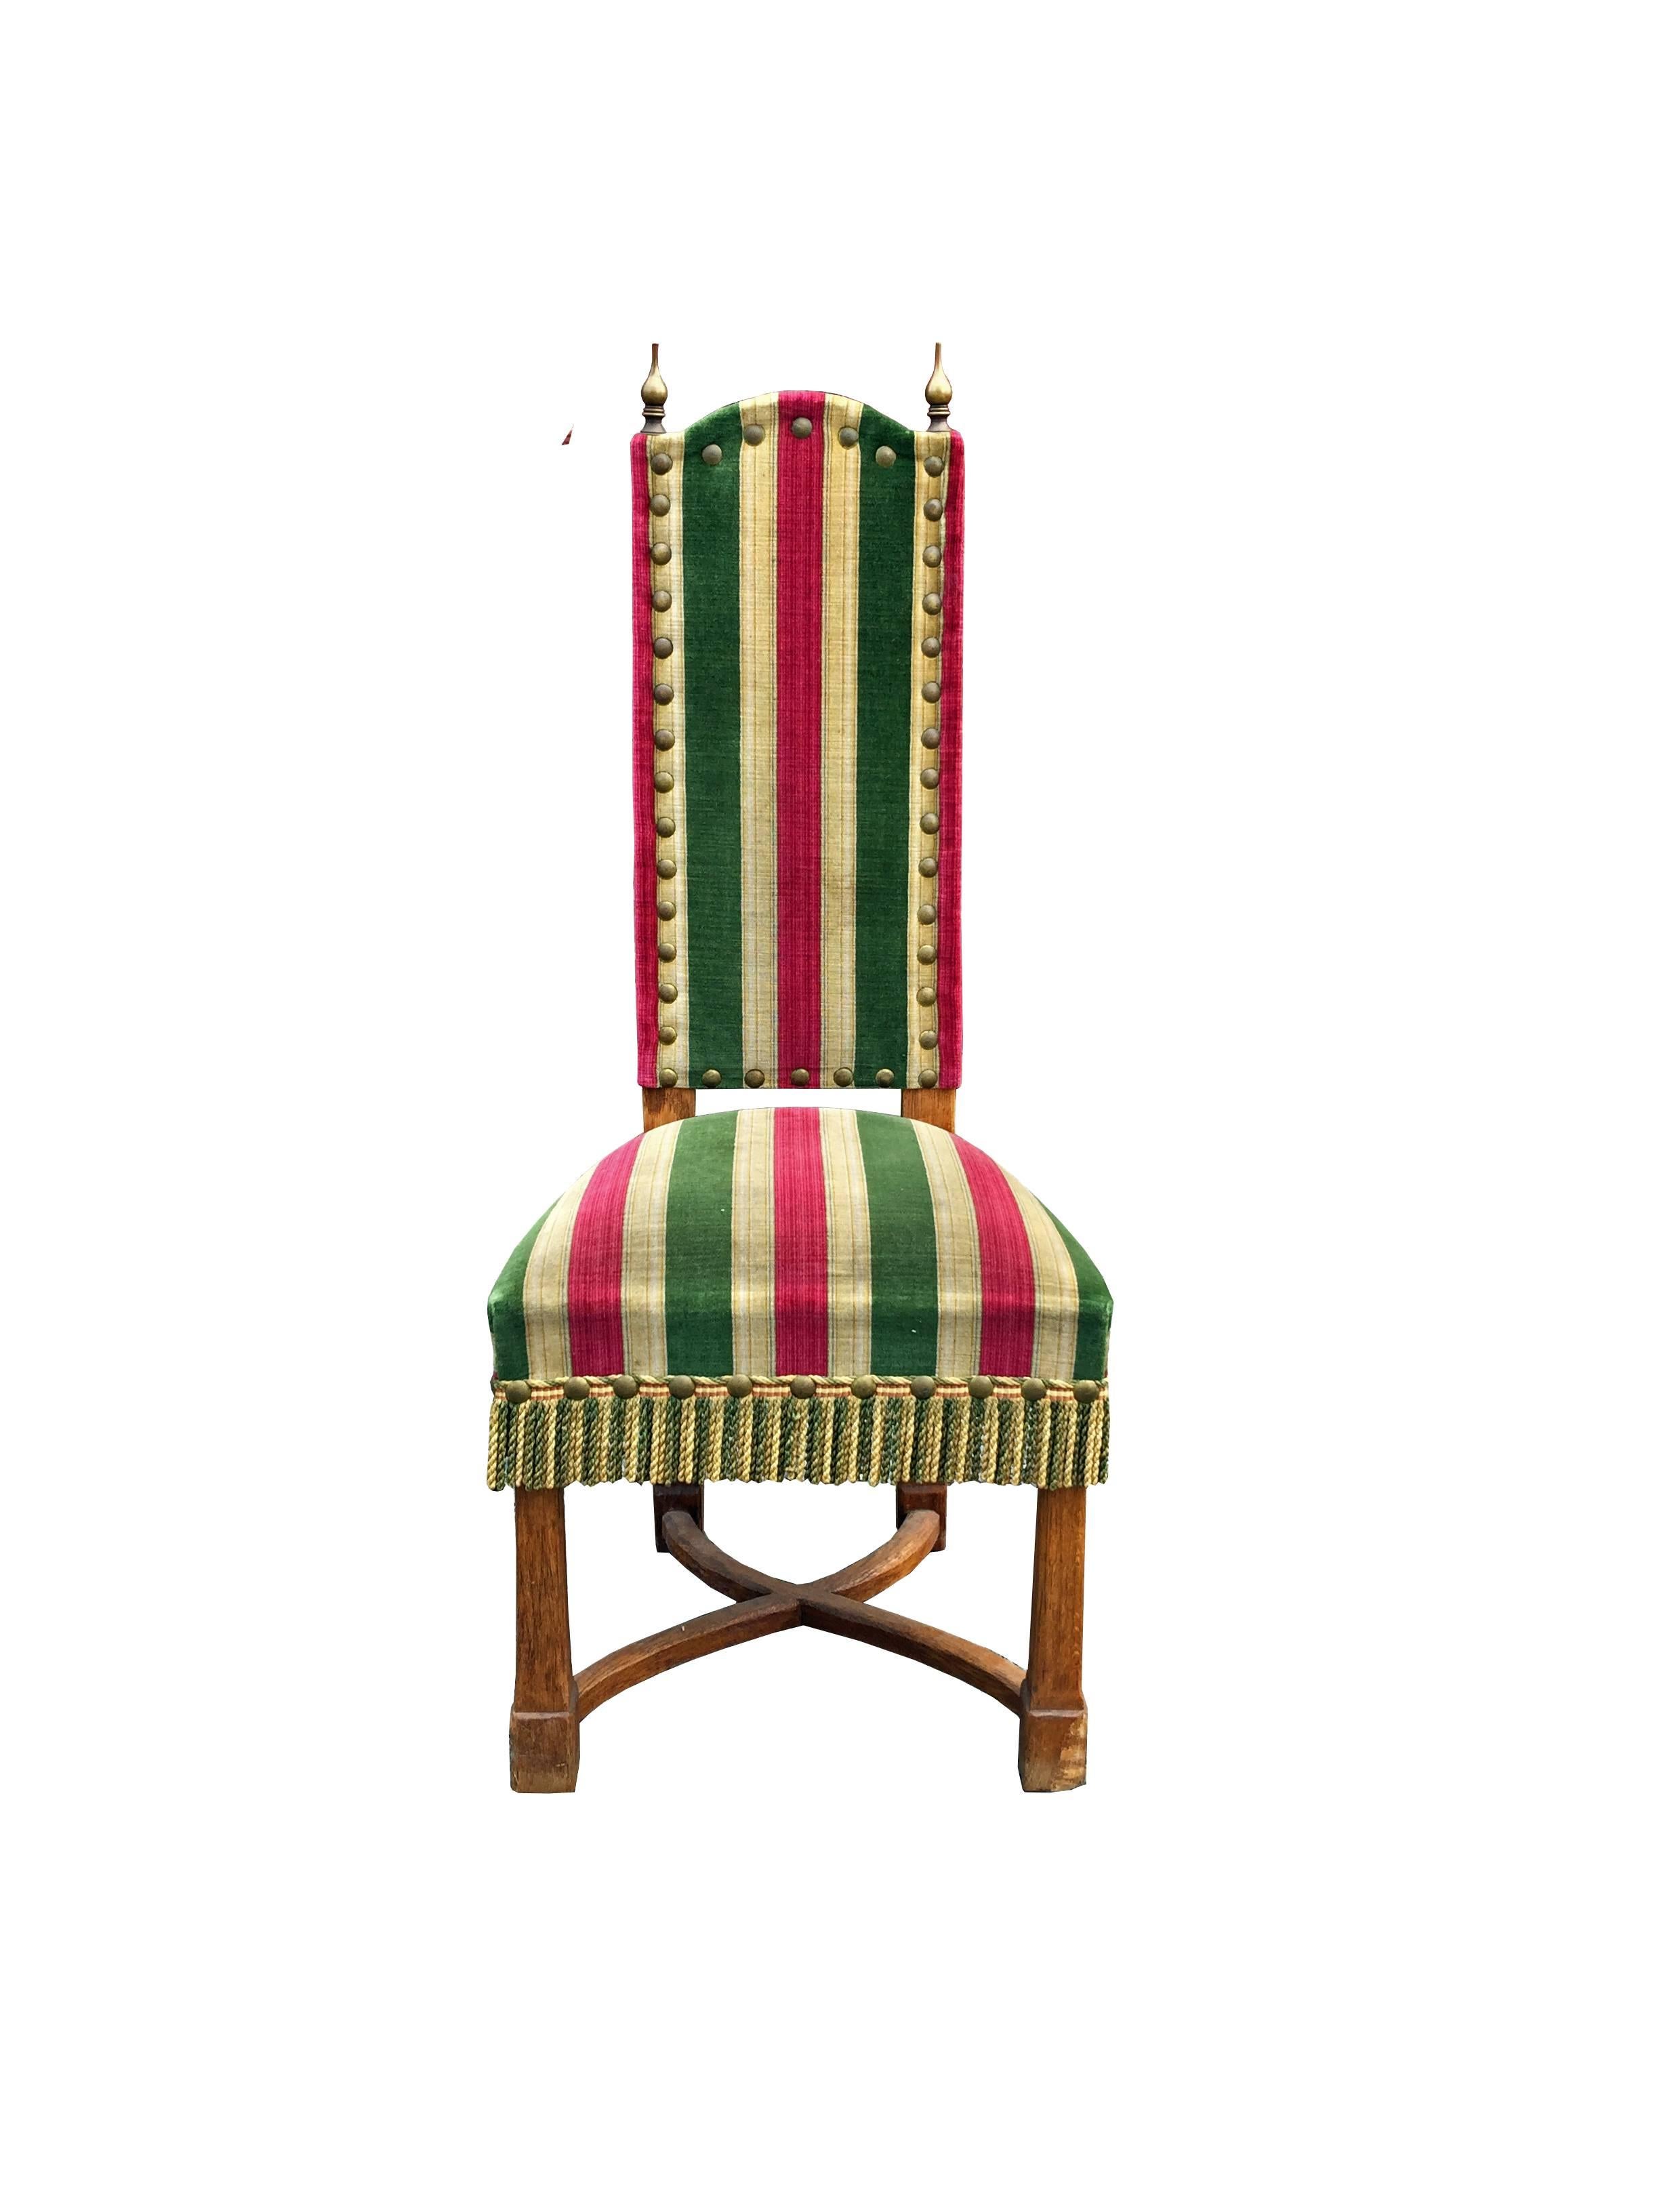 Satz von acht brutalistischen Stühlen aus Eiche, Messing und Samt, um 1950.
Abmessungen Stühle: 122 x 50 x 48 cm / HS 50 cm
Abmessungen Sessel: 122 x 58 x 50 cm / HS 53 cm.
ein weiteres Set aus dunklerer Eiche ist ebenfalls erhältlich
also 12 Stühle